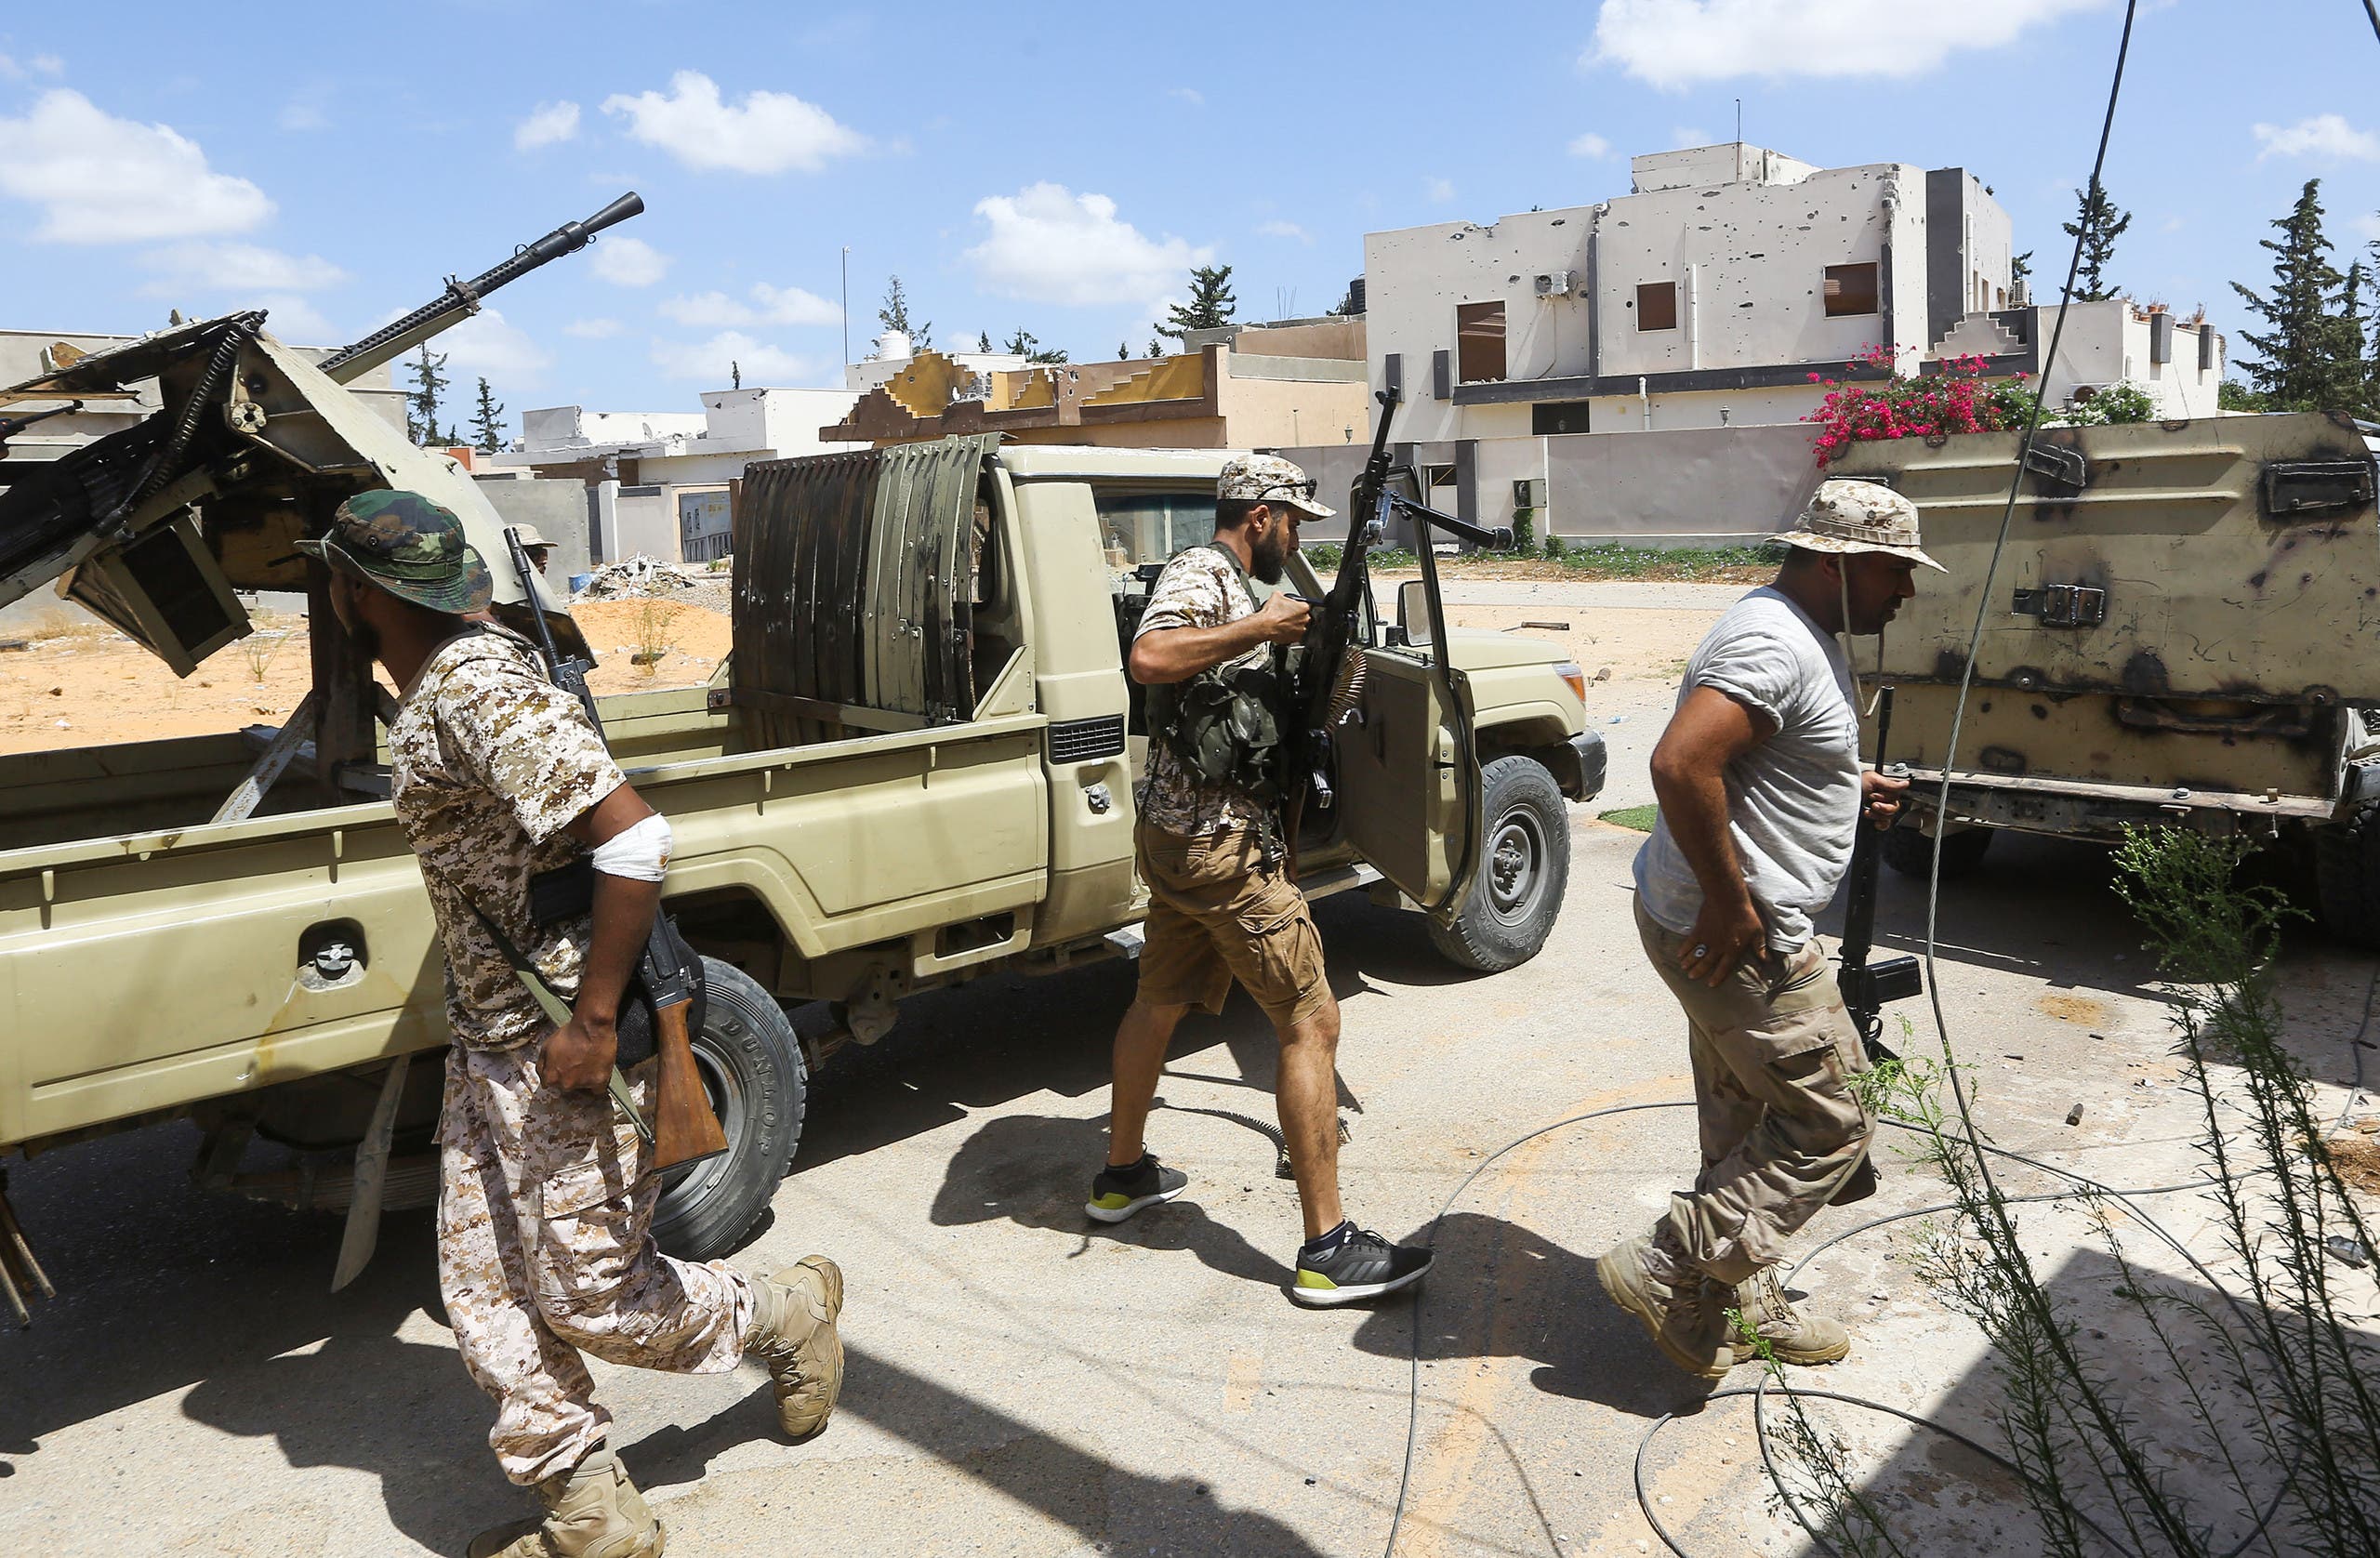 فصائل مسلحة ضمن قوات الوفاق في طرابلس(أرشيفية- فرانس برس)